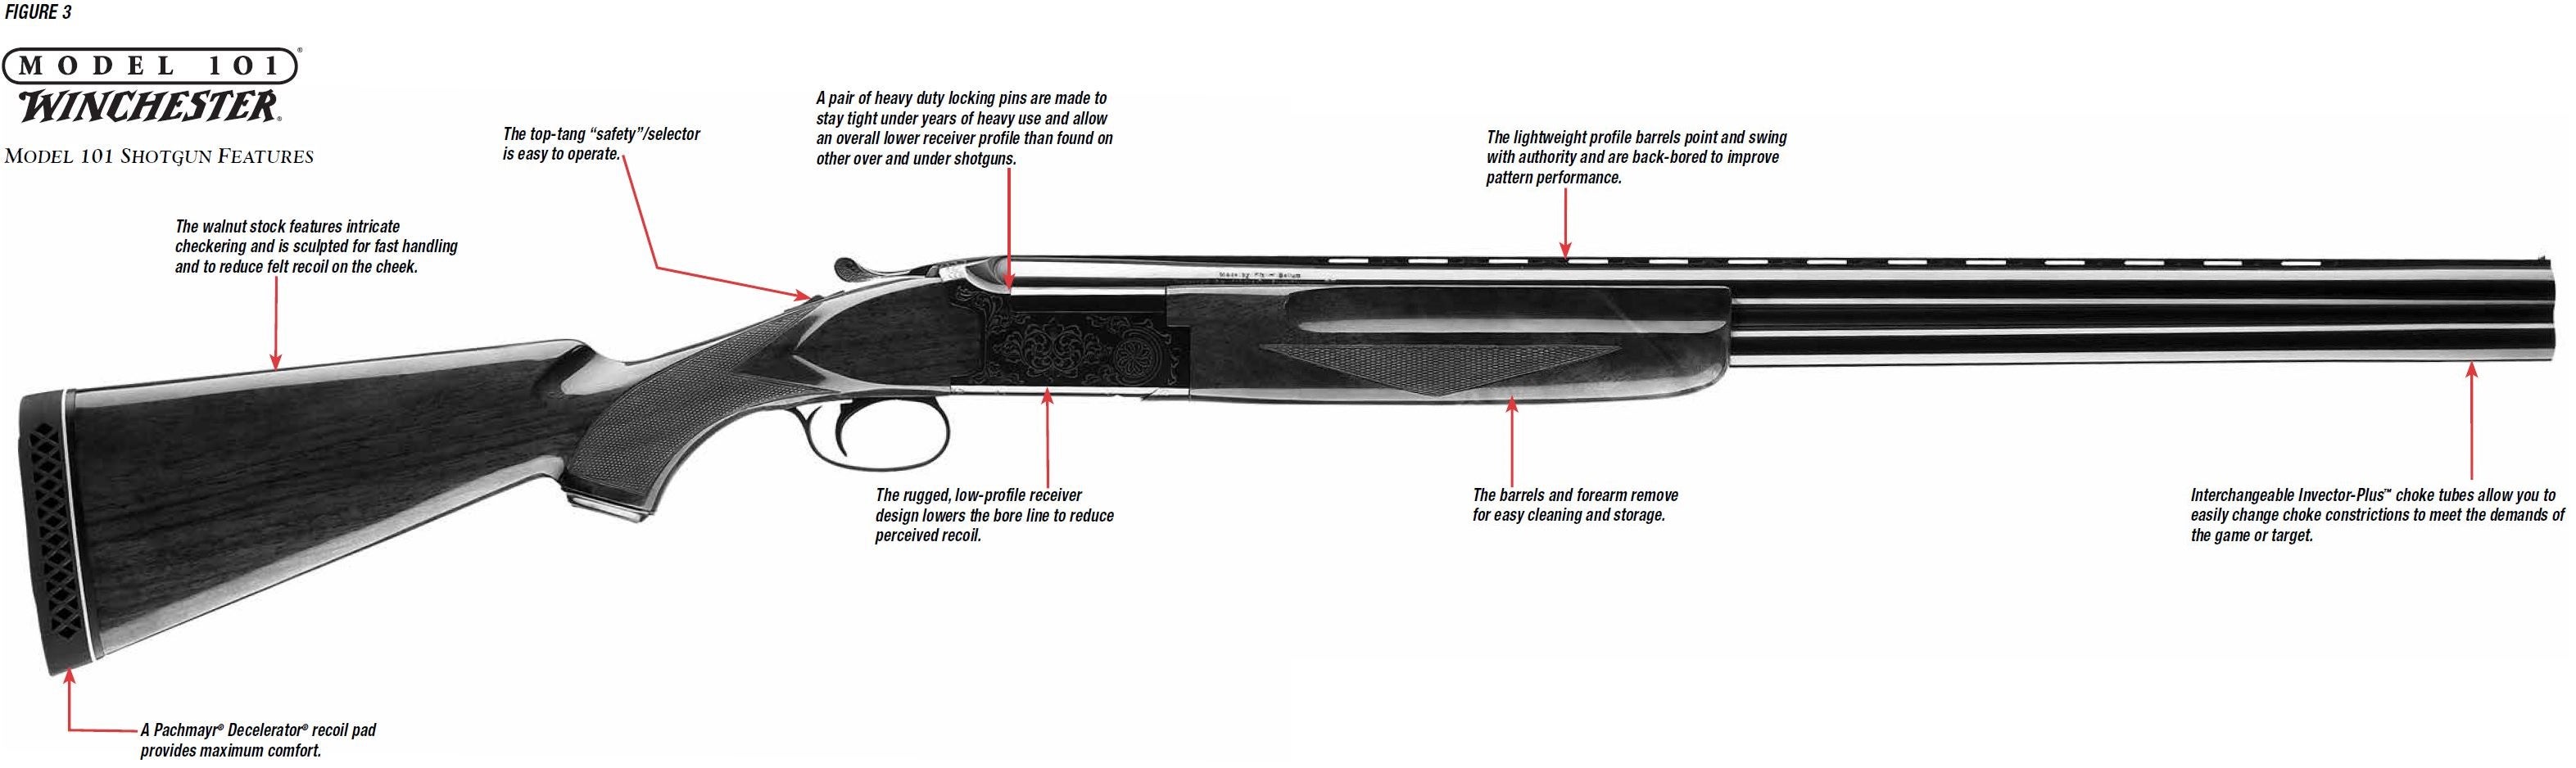 Model 101 Shotgun Diagram Figure 3